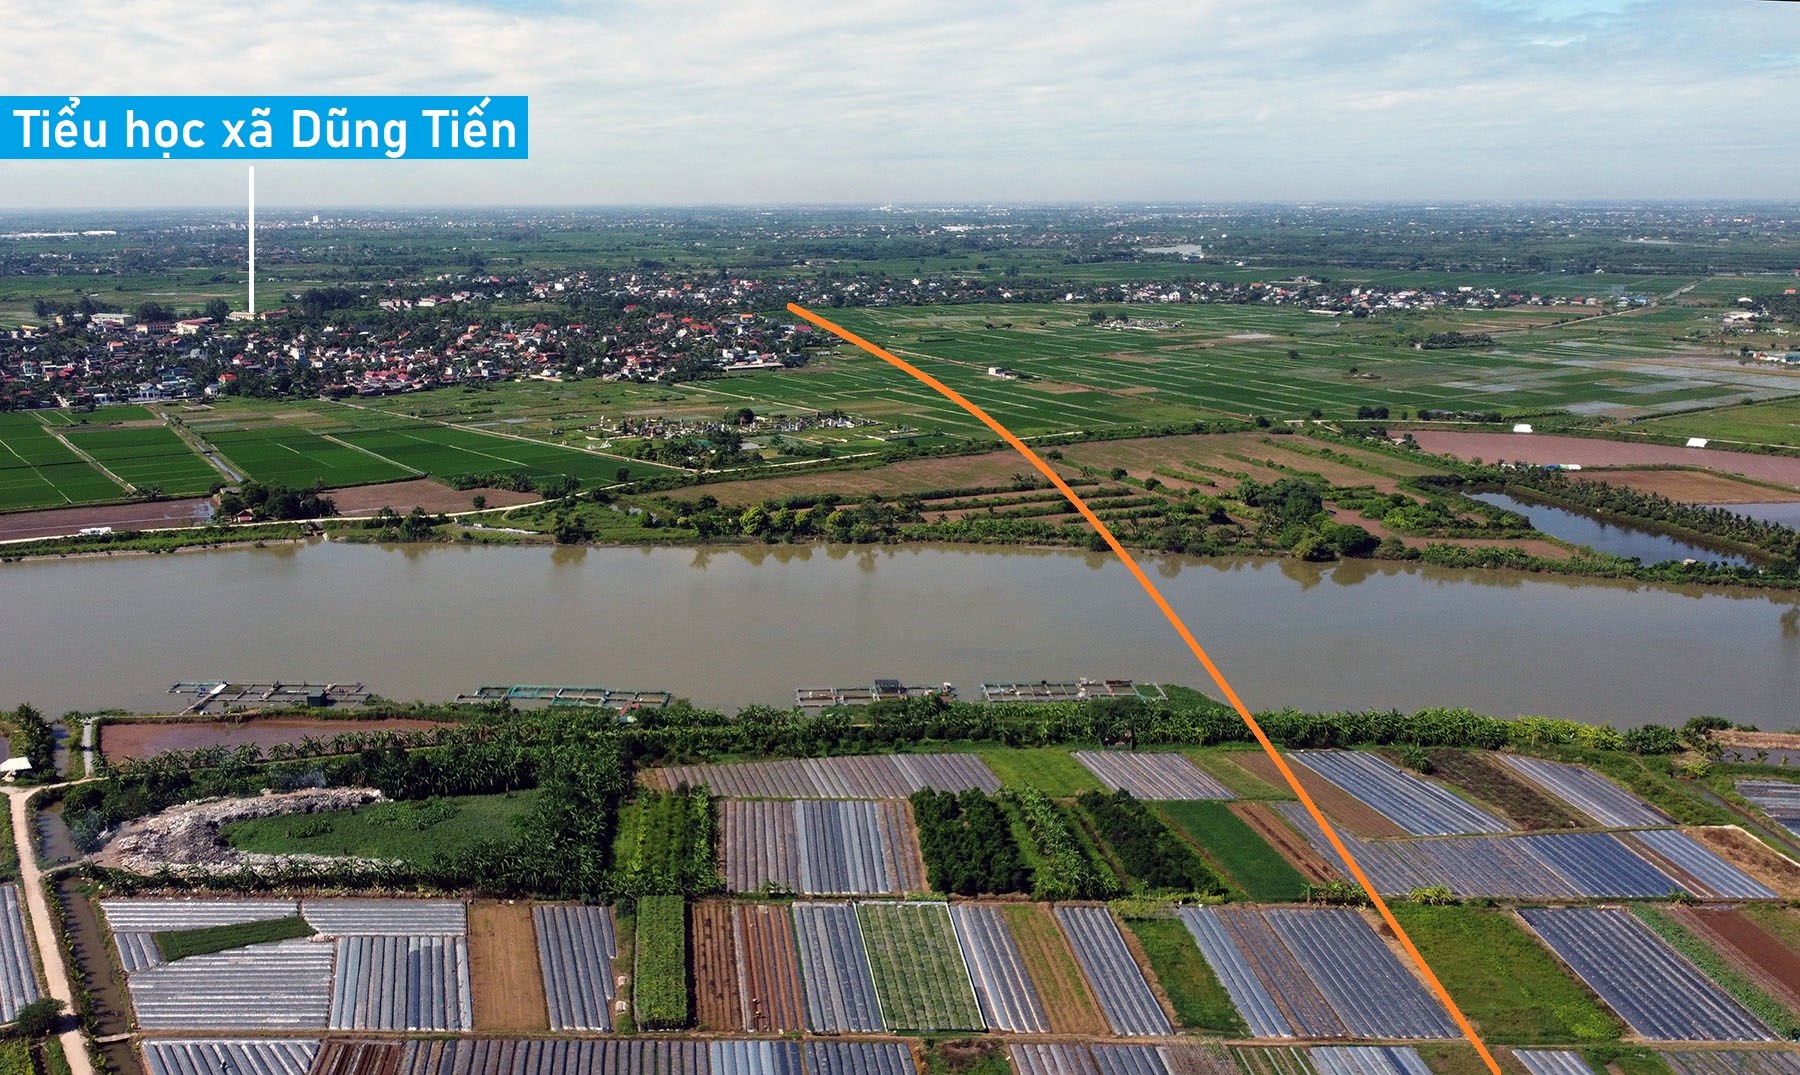 Toàn cảnh vị trí dự kiến xây cầu đường sắt vượt sông Luộc nối Hải Phòng - Hải Dương